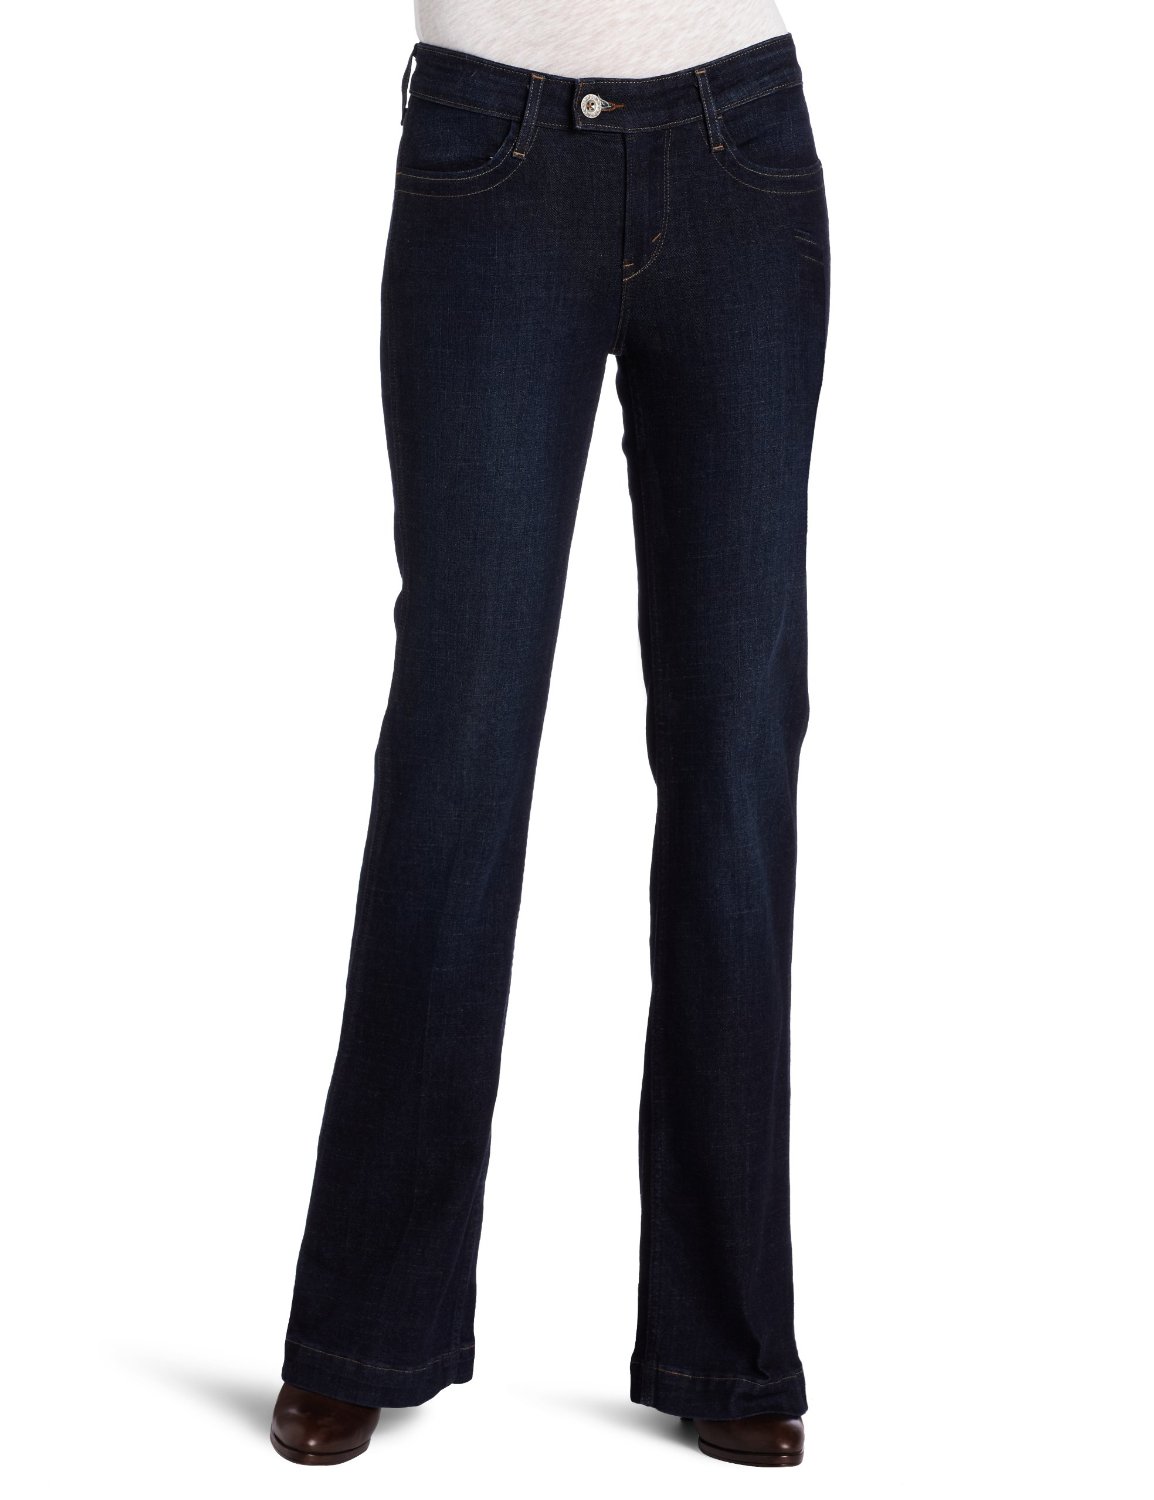 省！！！李维斯Levi's Styled Flare 女款 修身牛仔裤 $20.99(64%off)